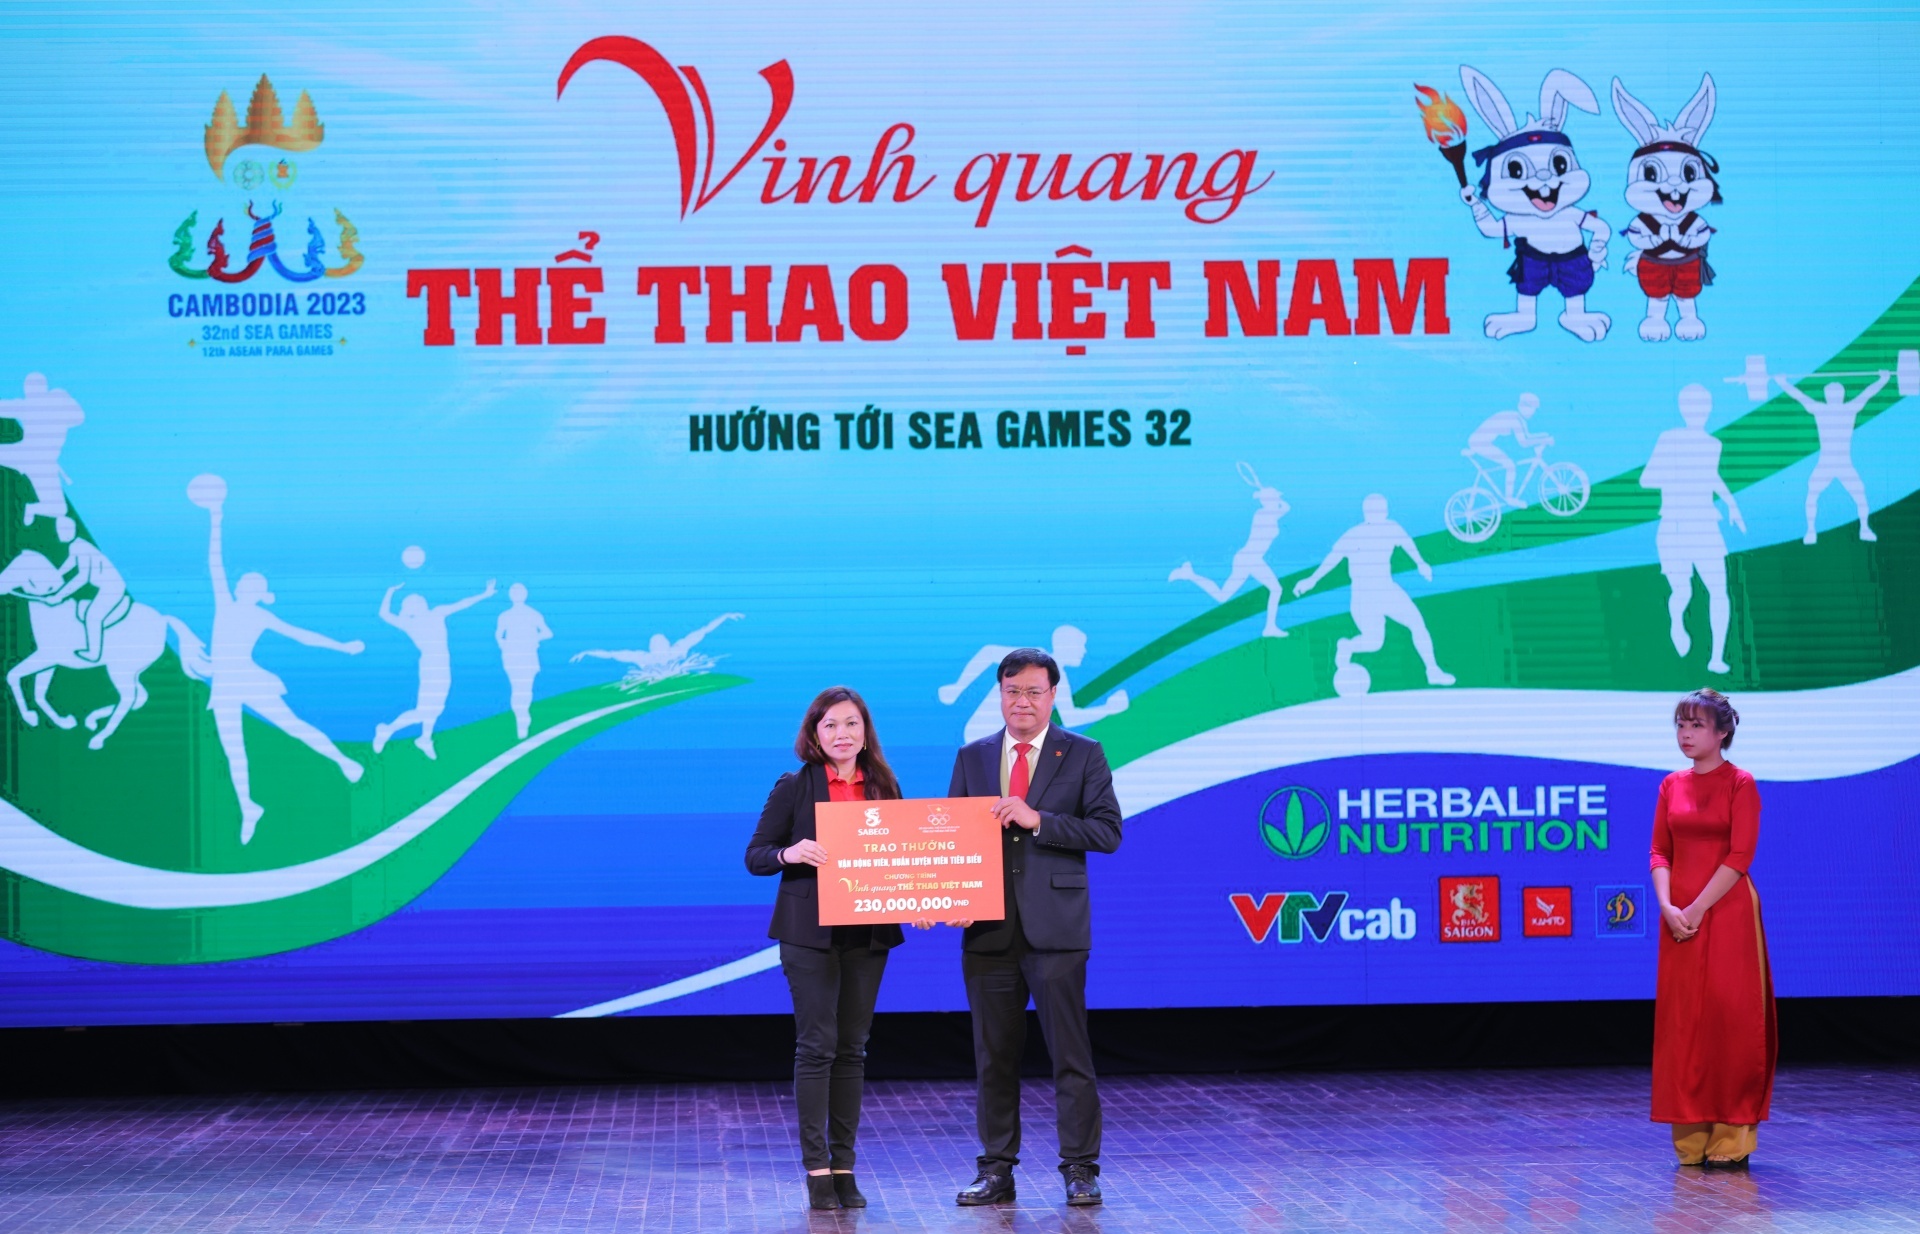 SABECO and Bia Saigon back Vietnamese athletes